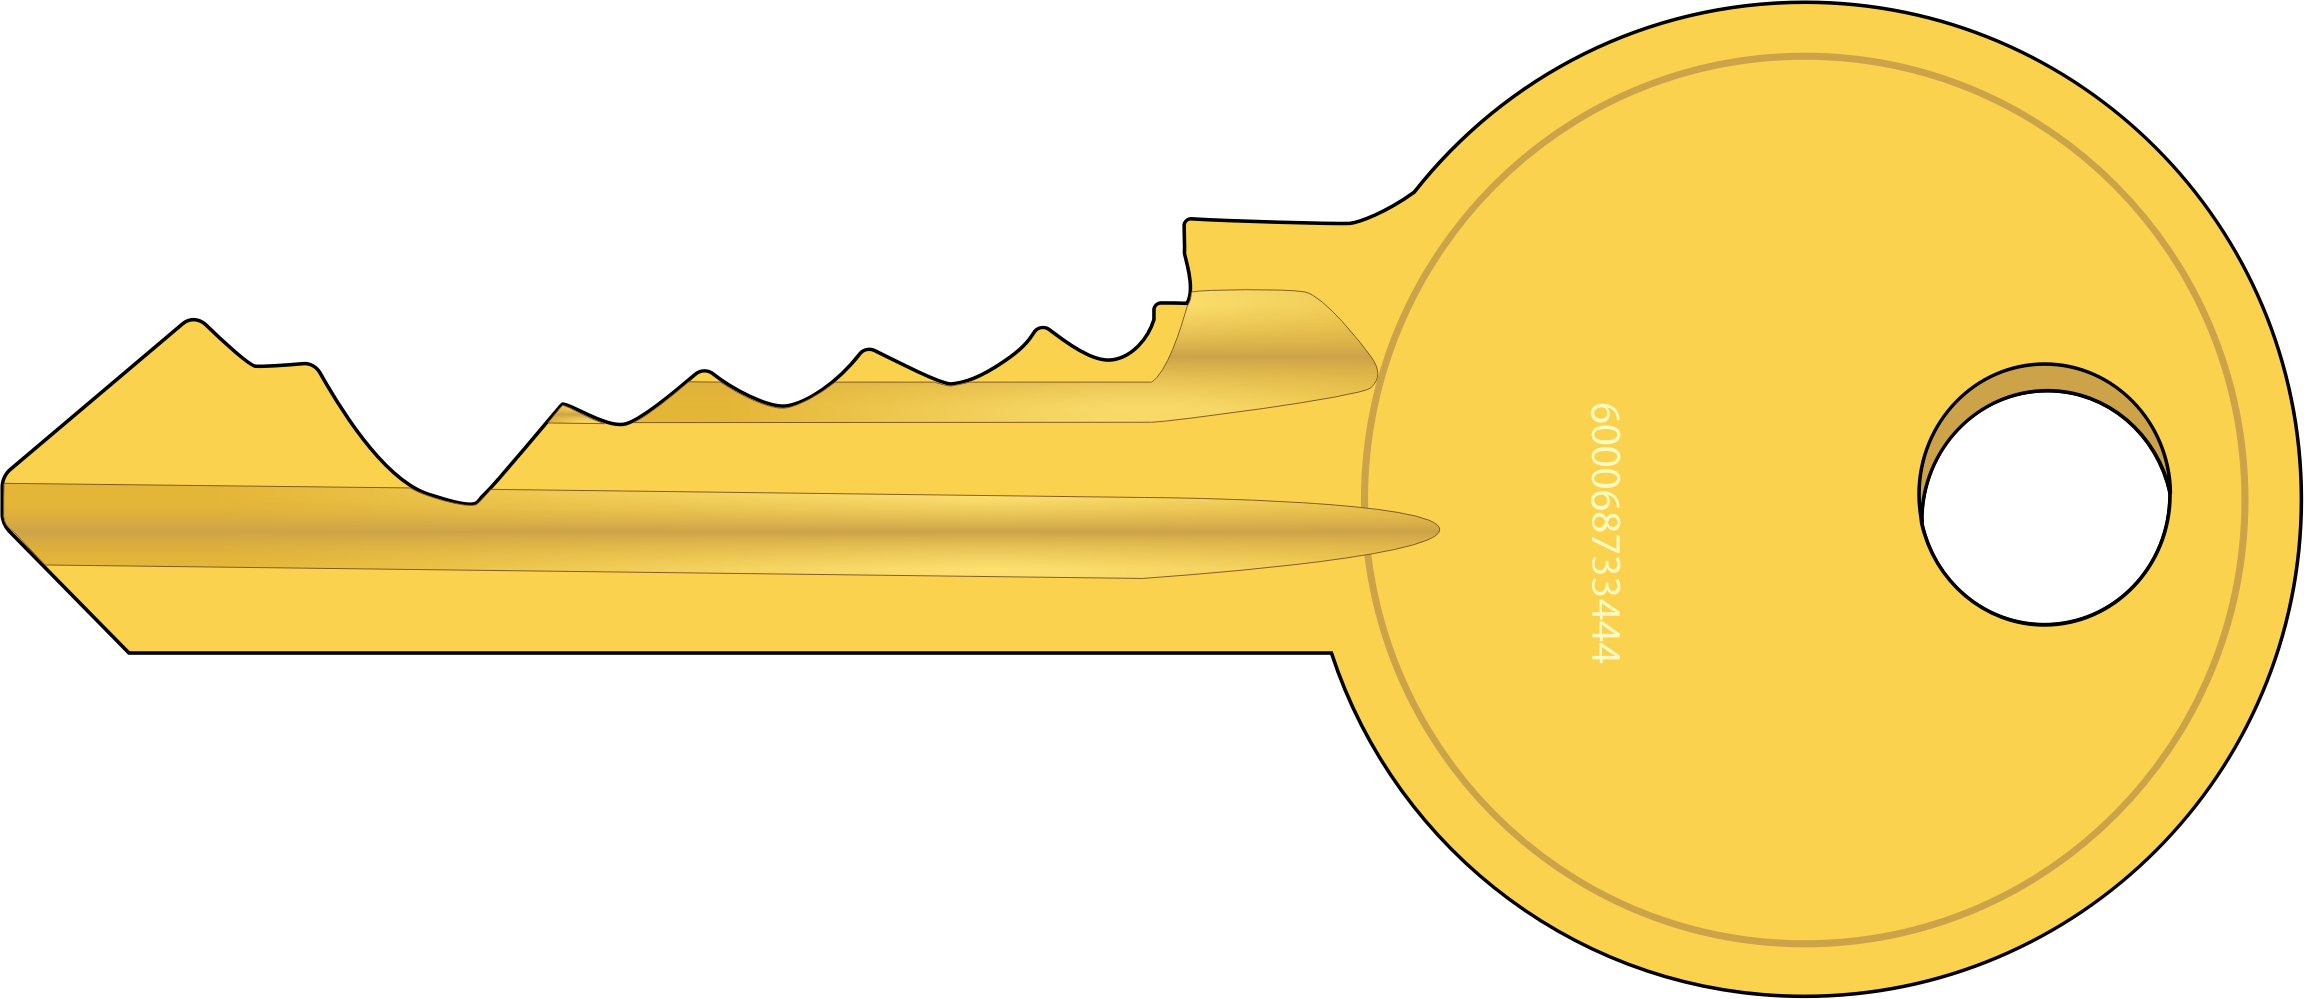 clip art lock and key - photo #16